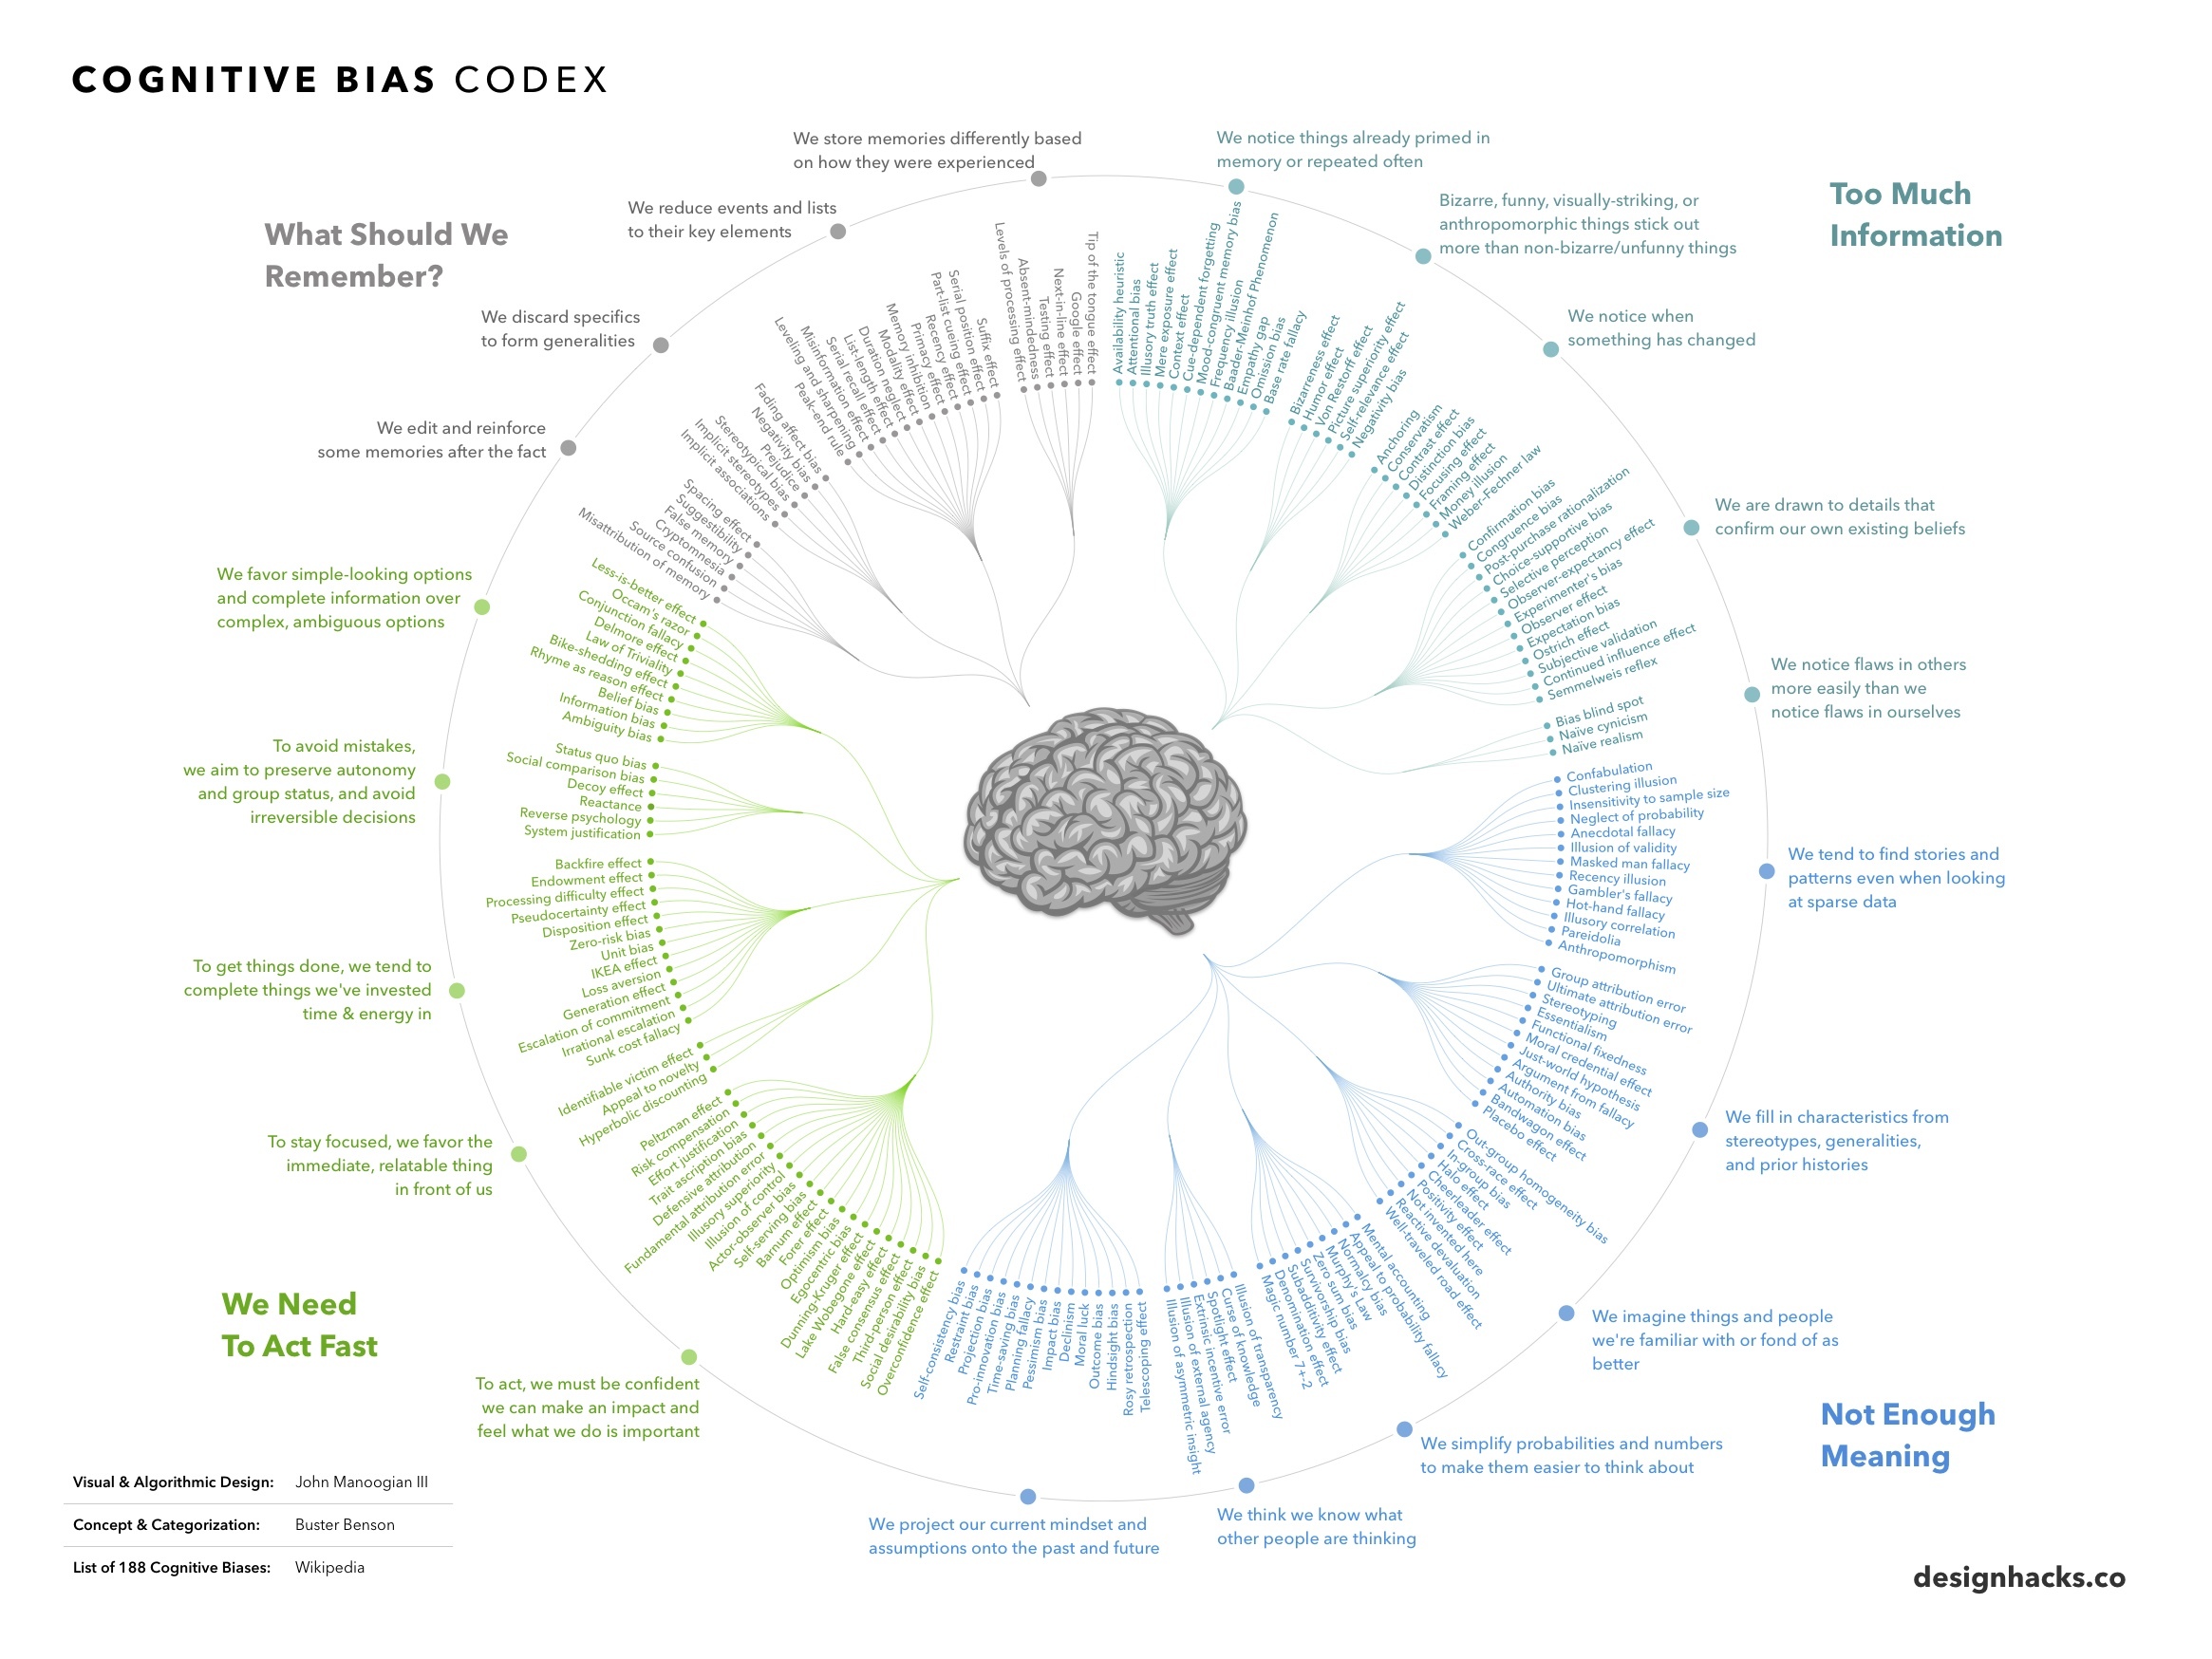 Infografía con distintos sesgos cognitivos ordenados según tus tipos.